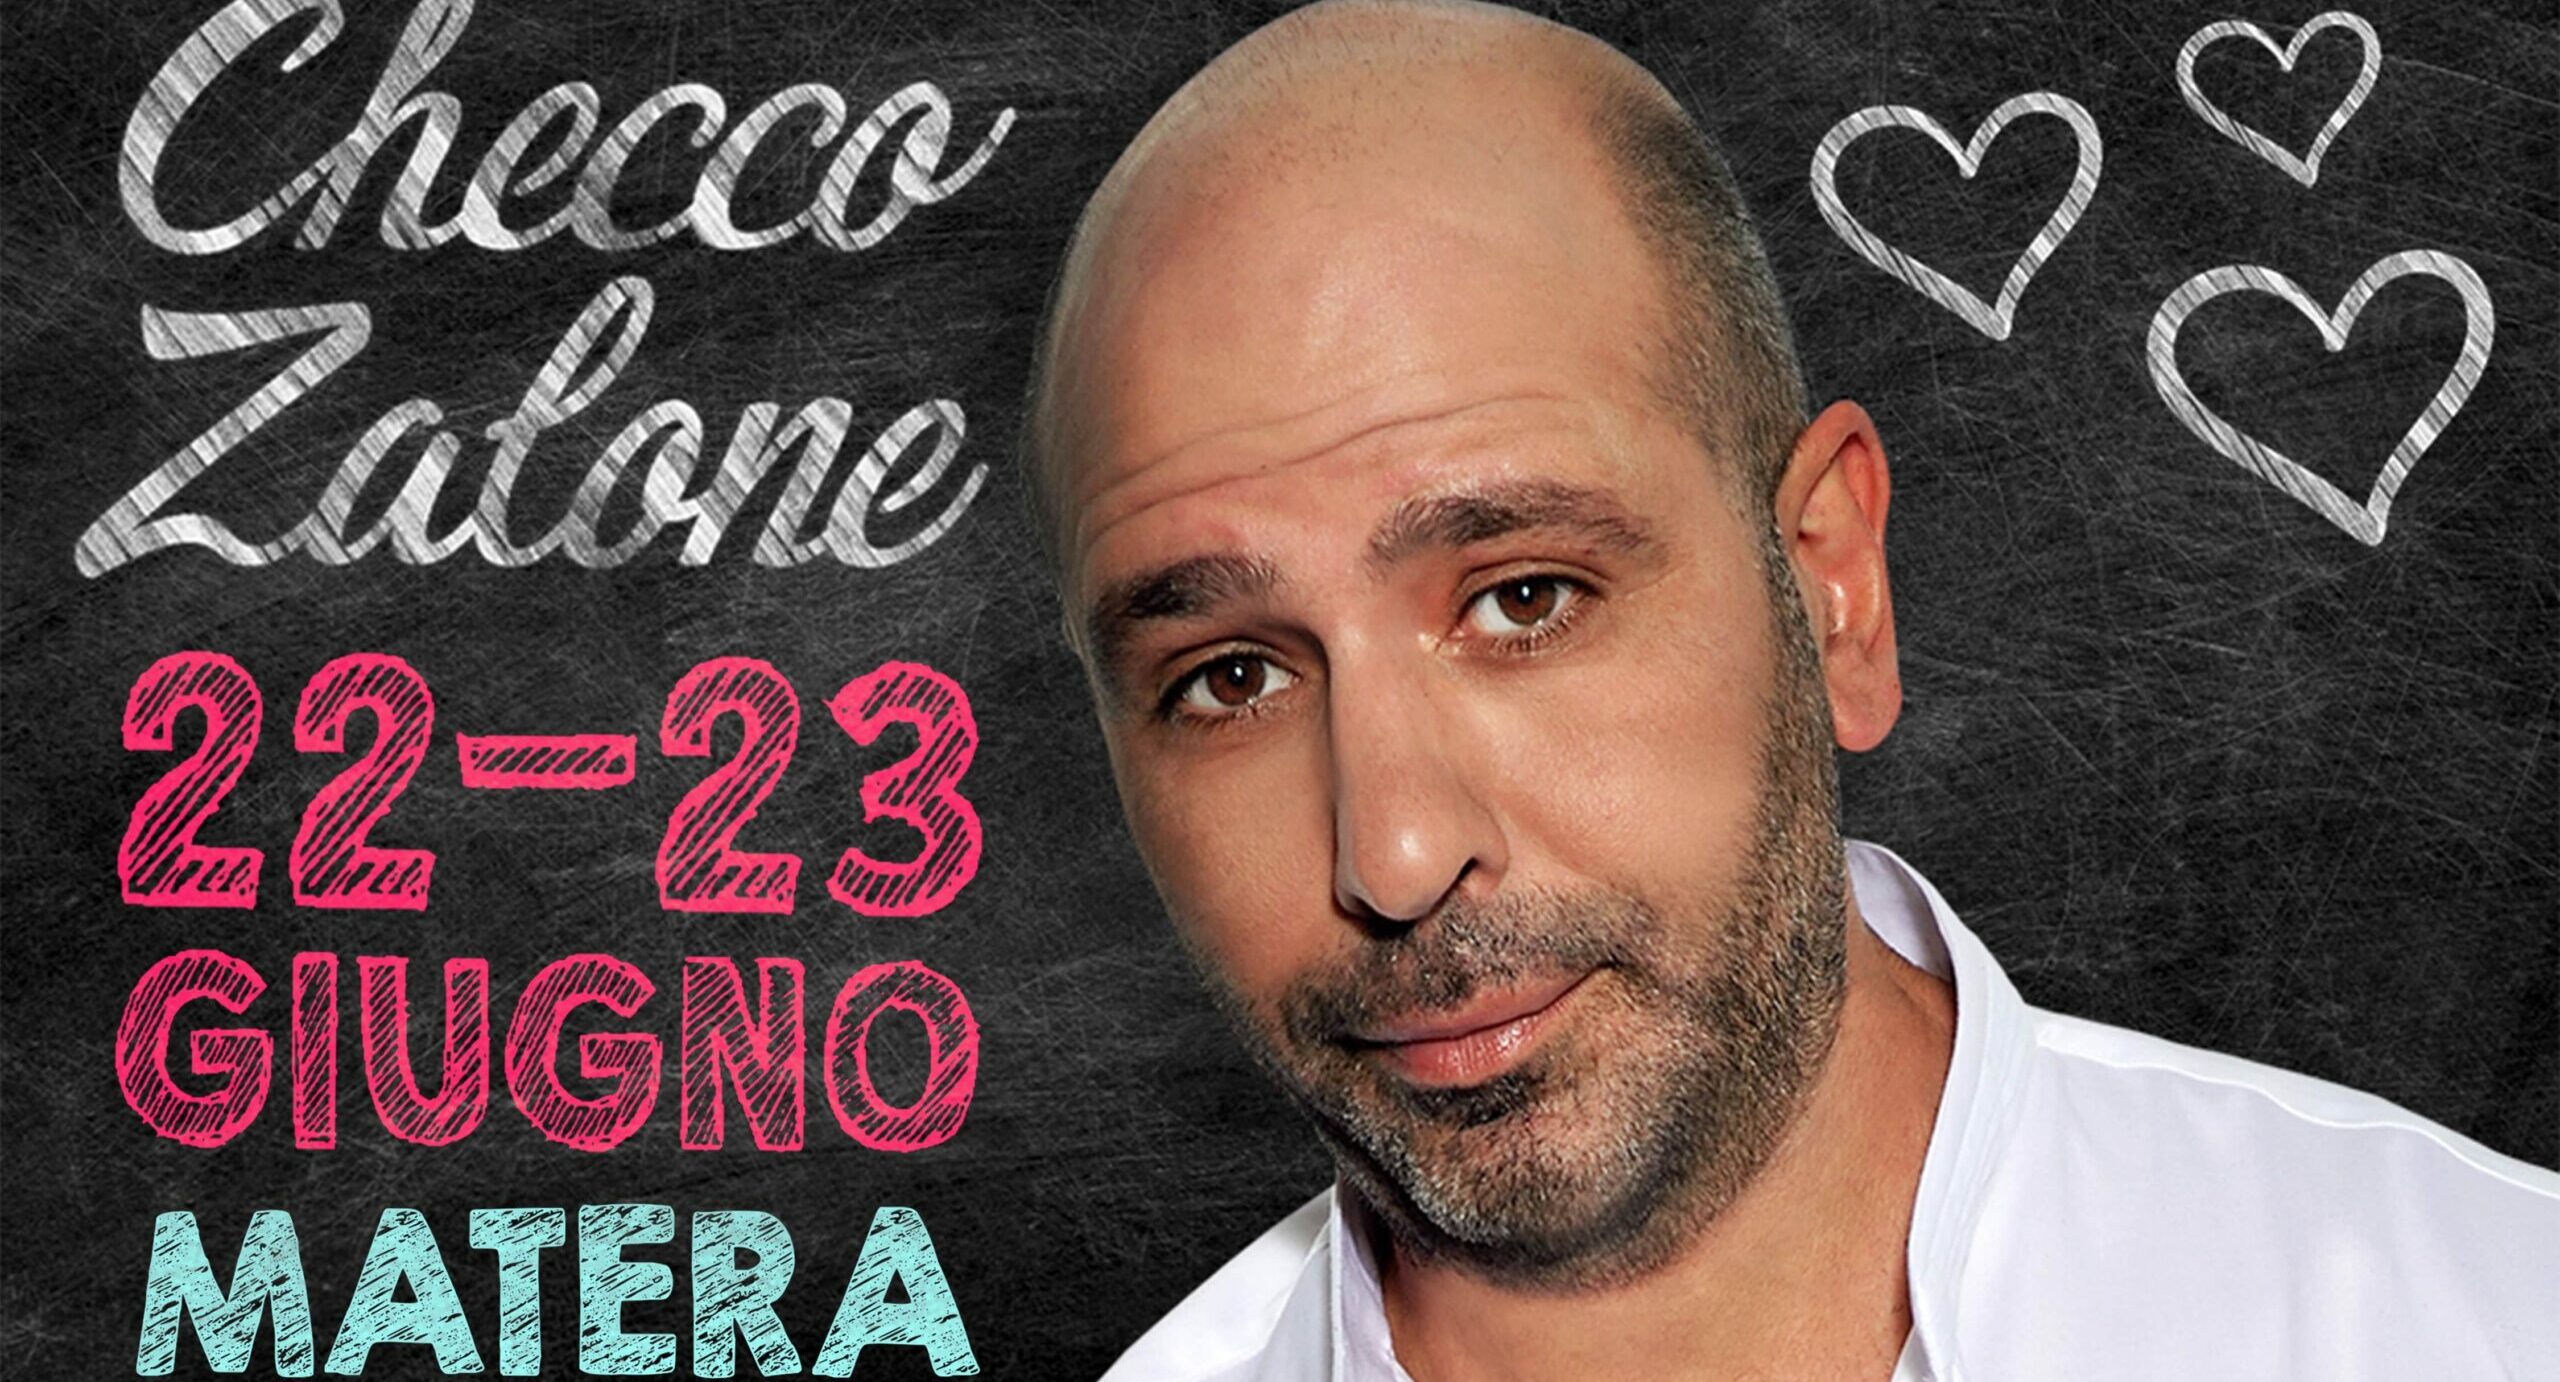 Checco Zalone a Matera il 22 e 23 giugno con lo spettacolo “Amore + IVA”. In vendita da oggi i biglietti sulle piattaforme online TicketOne e TicketSms